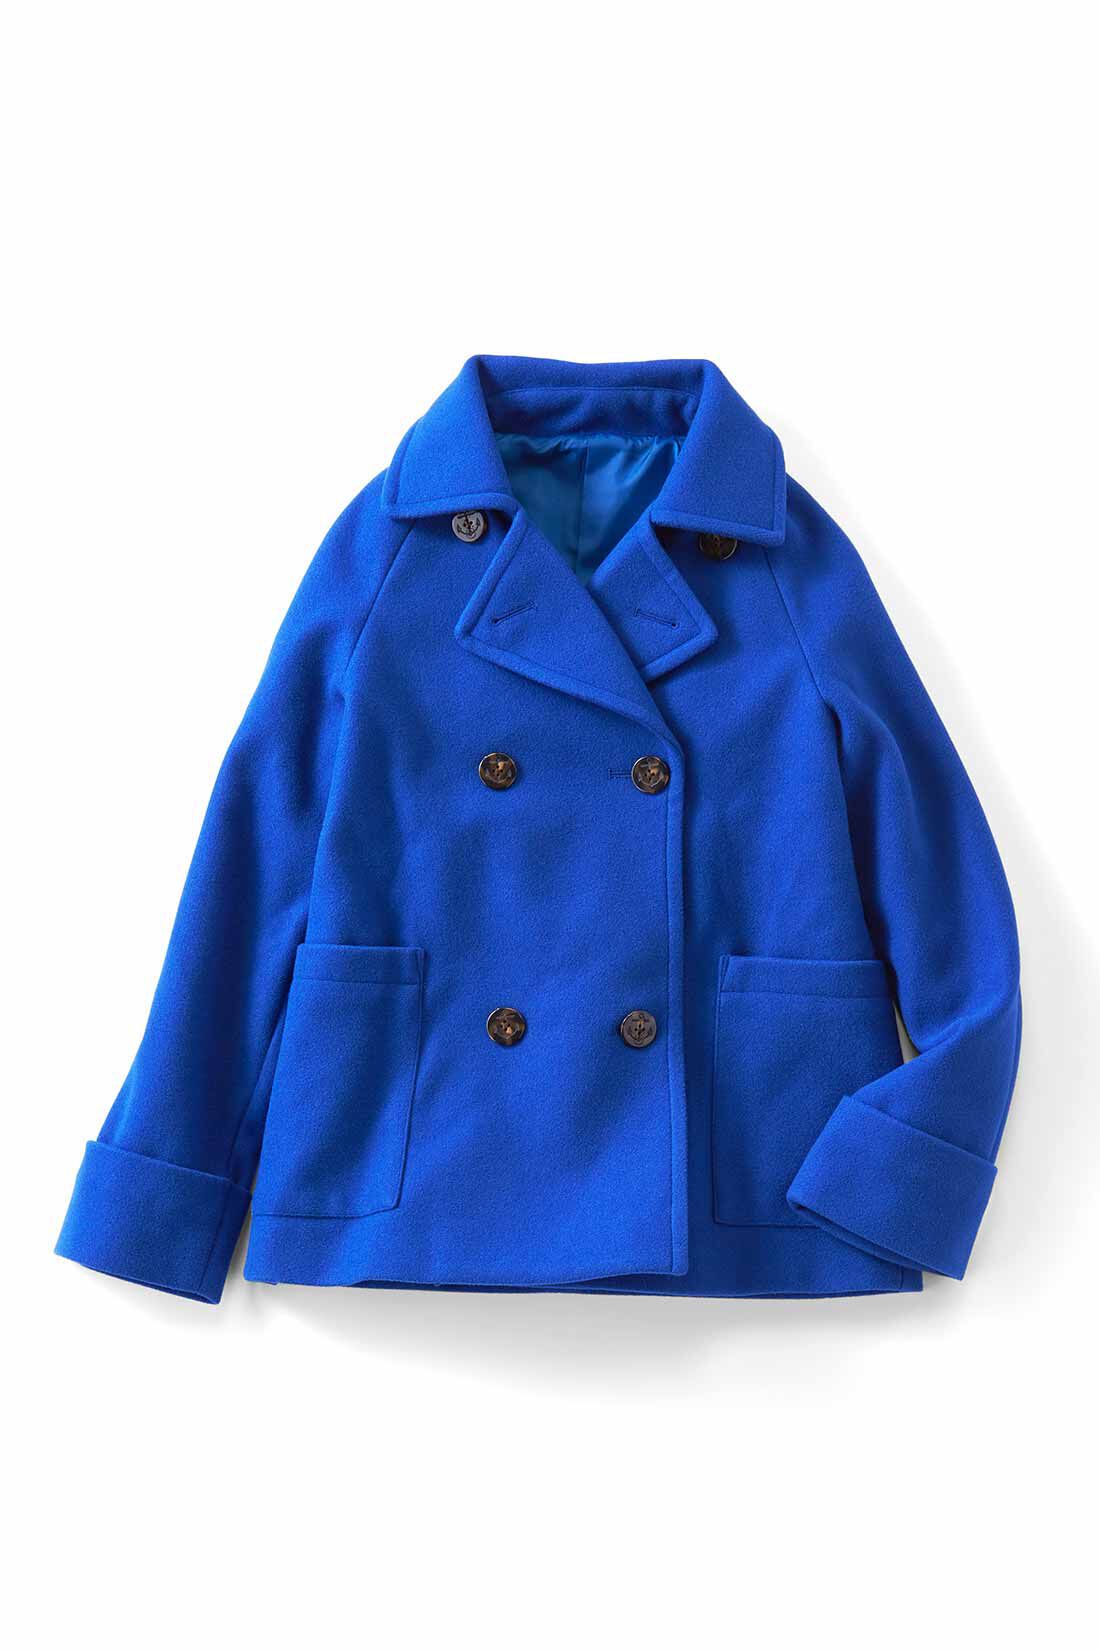 IEDIT|IEDIT[イディット]　着映えカラーのショート丈こなれPコート〈ロイヤルブルー〉|ロイヤルブルー